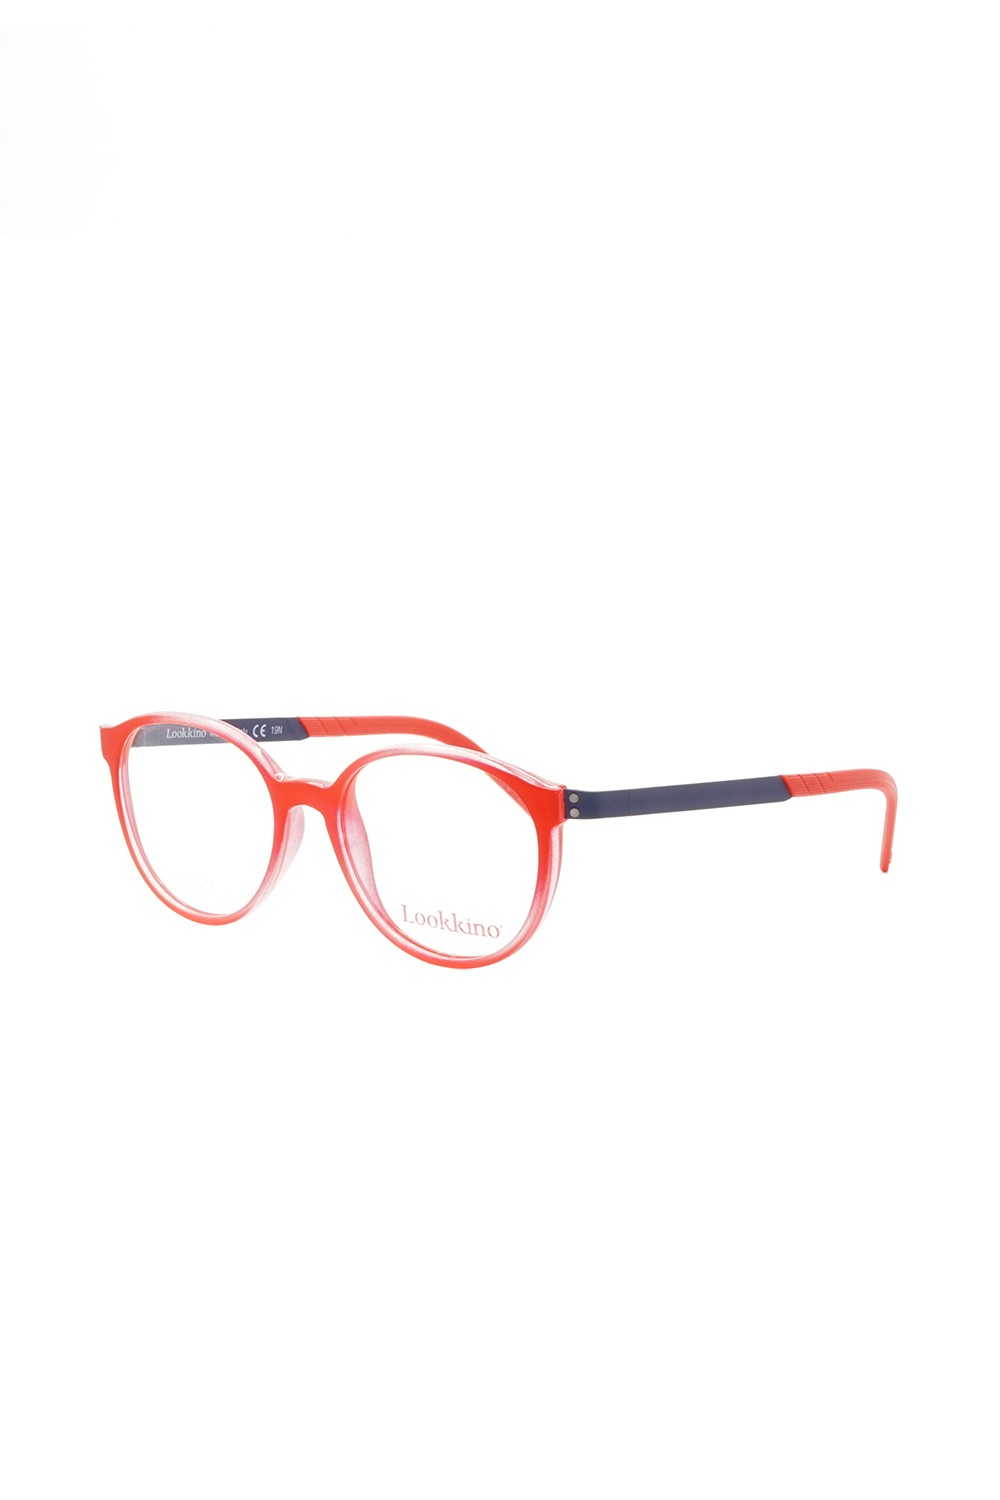 Lookkino - Occhiali da vista in plastica tondi per bambini rosso - 3759 W193